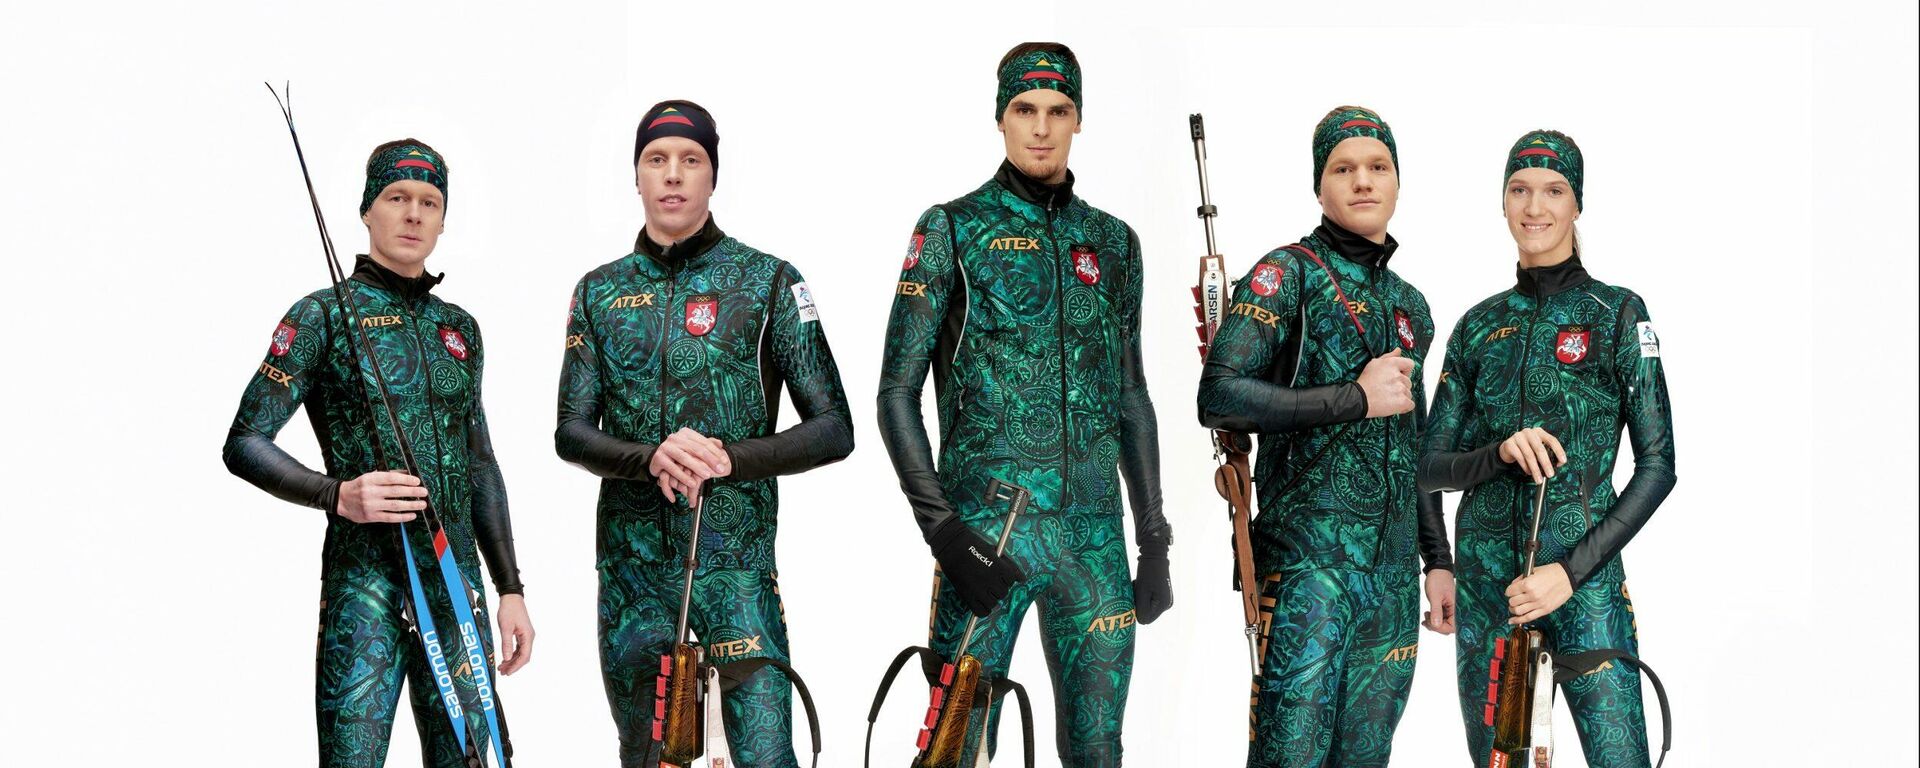 Литовские биатлонисты в форме для Олимпийских игр в Пекине - Sputnik Литва, 1920, 27.01.2022